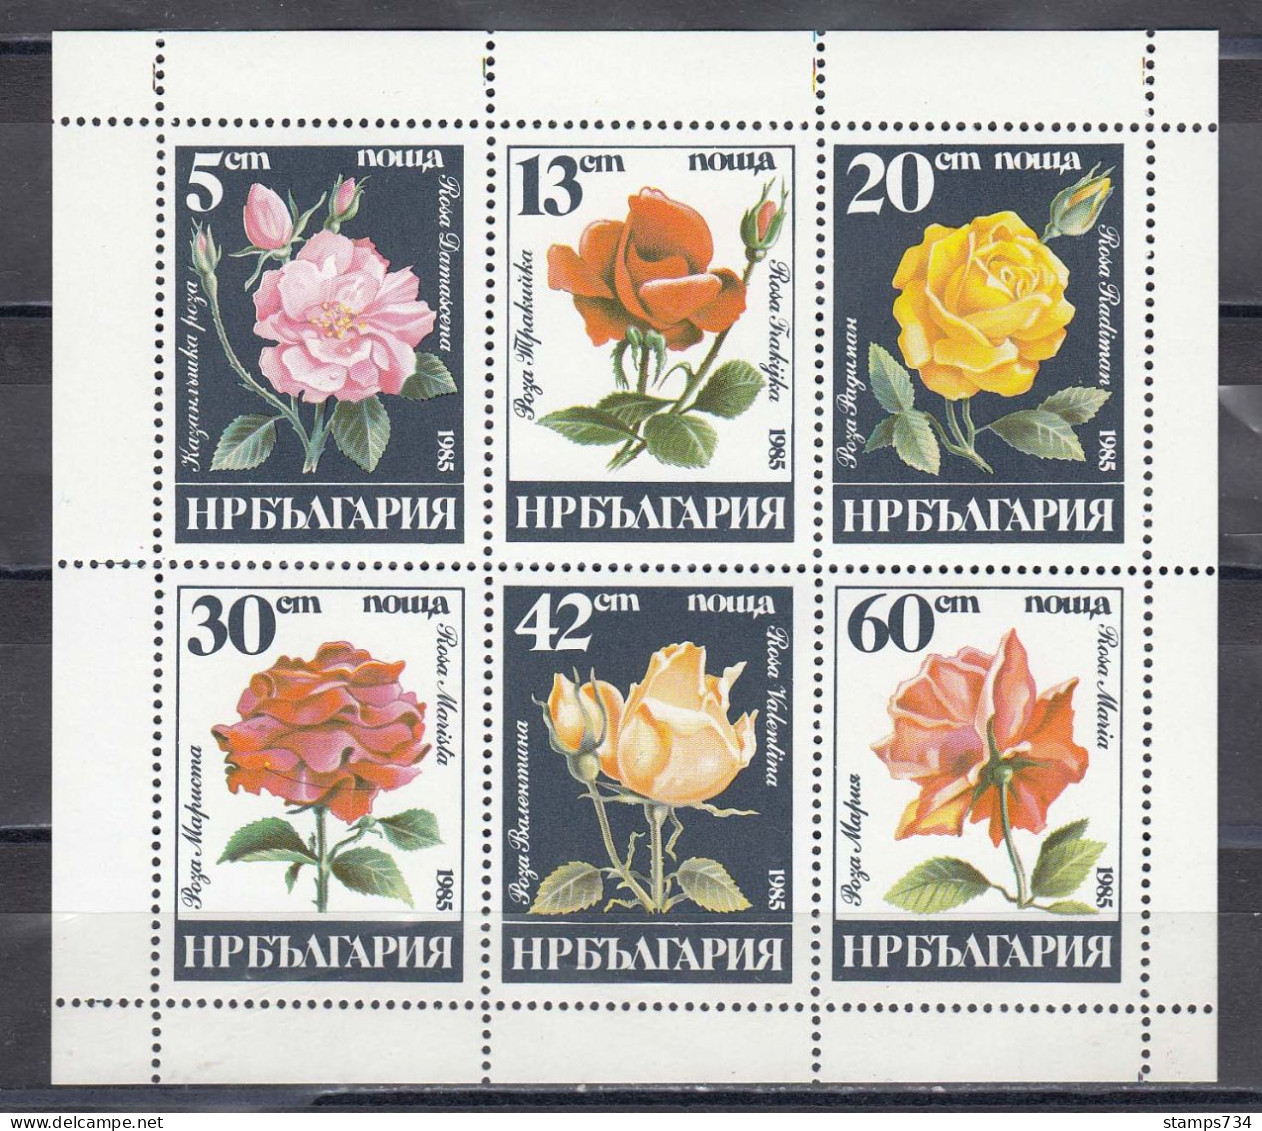 Bulgaria 1985 - Roses, Mi-Nr. 3373/78 In Sheet, MNH** - Ongebruikt